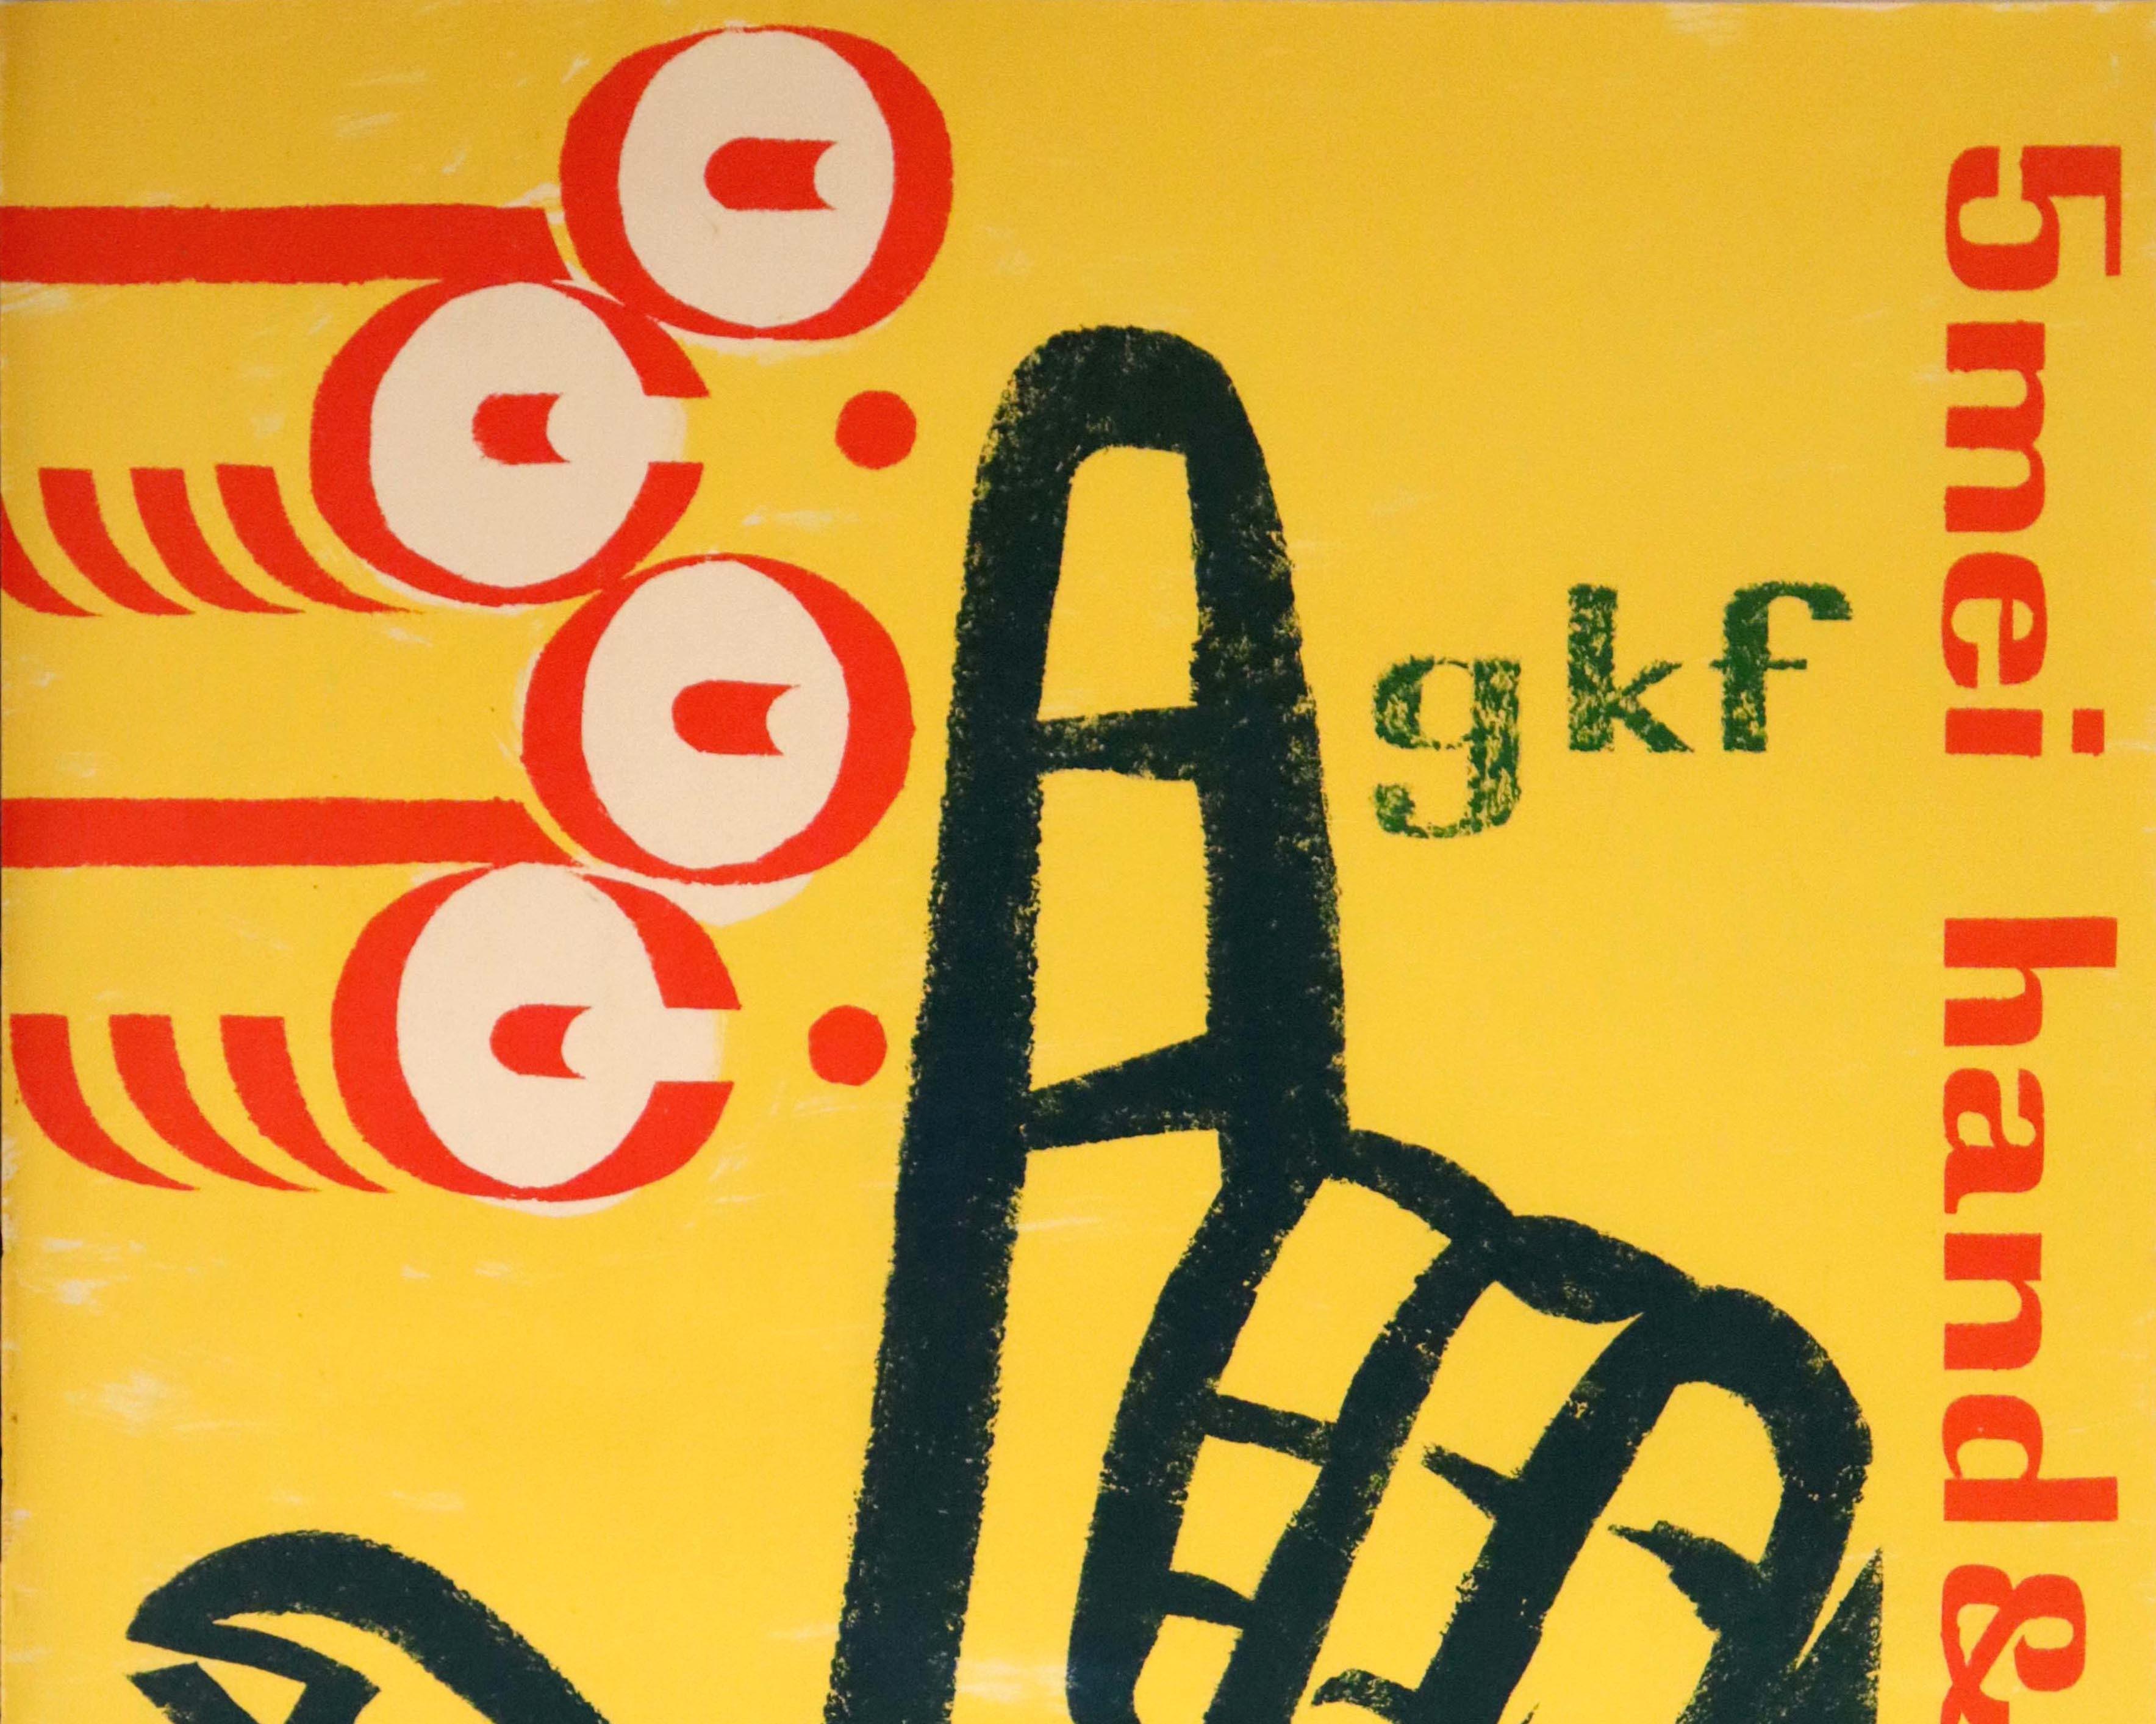 Affiche publicitaire originale pour l'exposition GKF 5 Mei Hand & Machine au Stedelijk Museum d'Amsterdam. Illustration du milieu du siècle d'une main noire avec un doigt pointant vers le haut à côté de formes rouges et blanches sur fond jaune, le